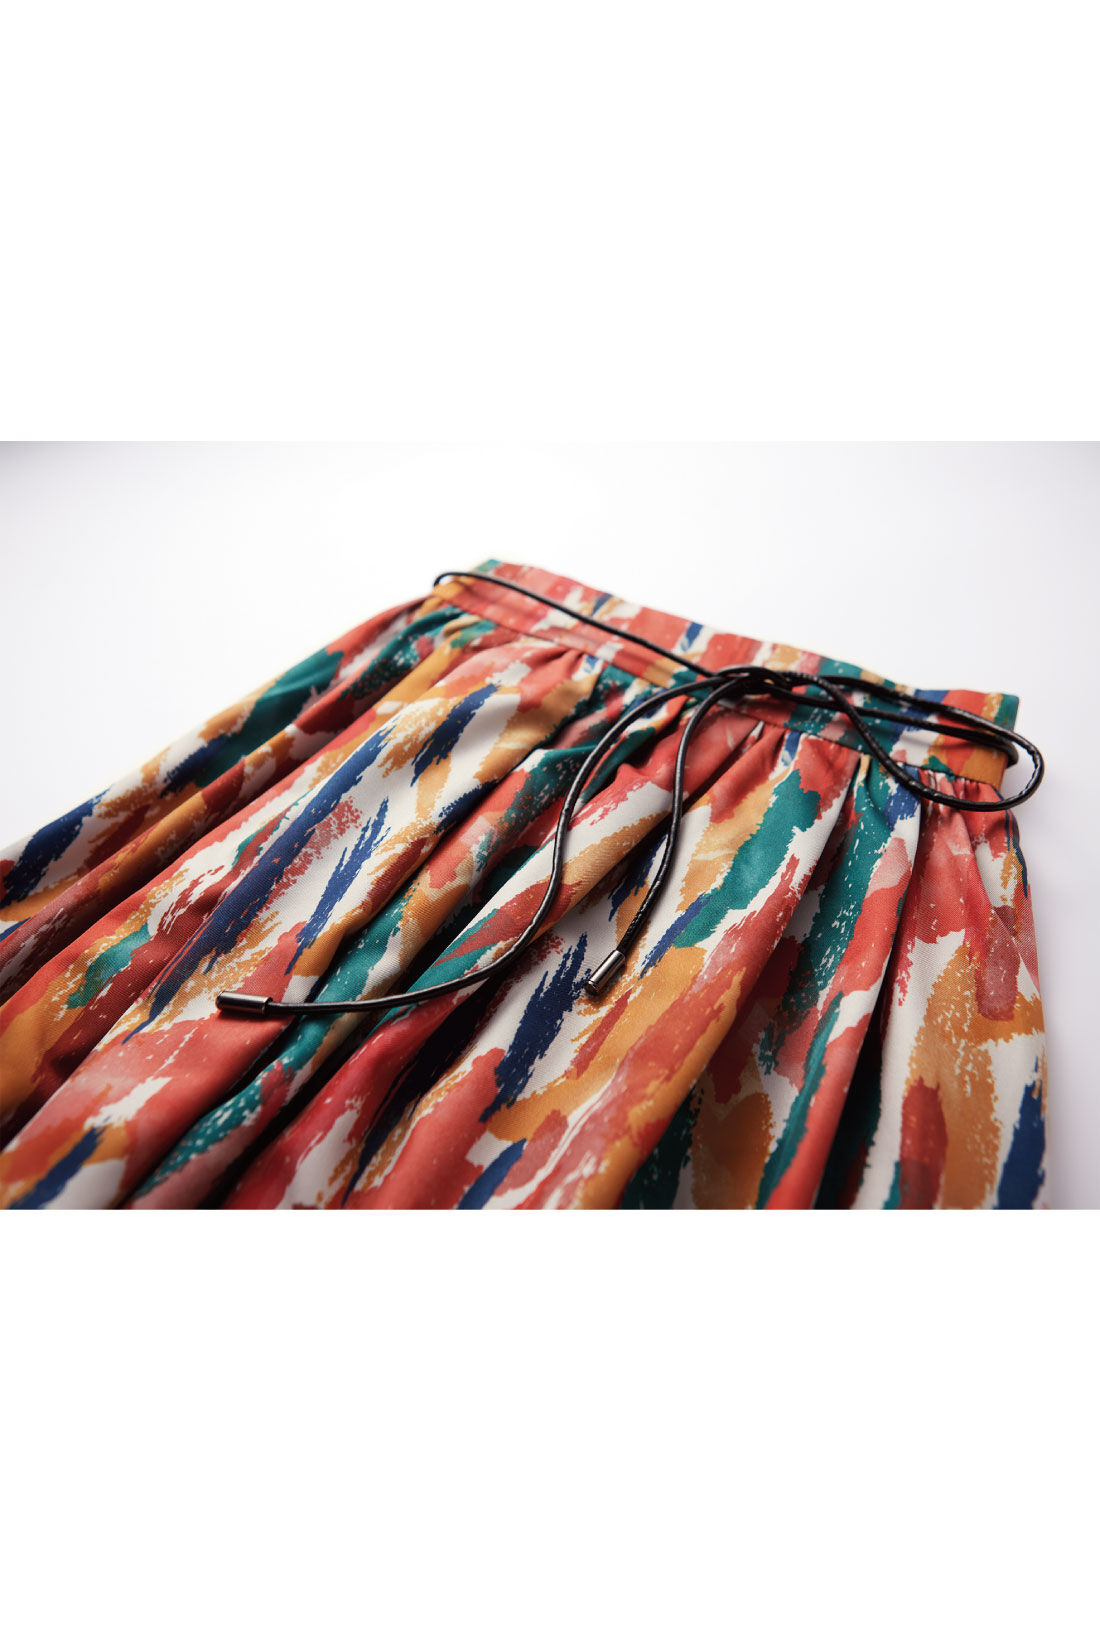 Real Stock|IEDIT[イディット]　ルノワールの色彩をまとう アートペイント柄のマルチカラーボリュームロングスカート